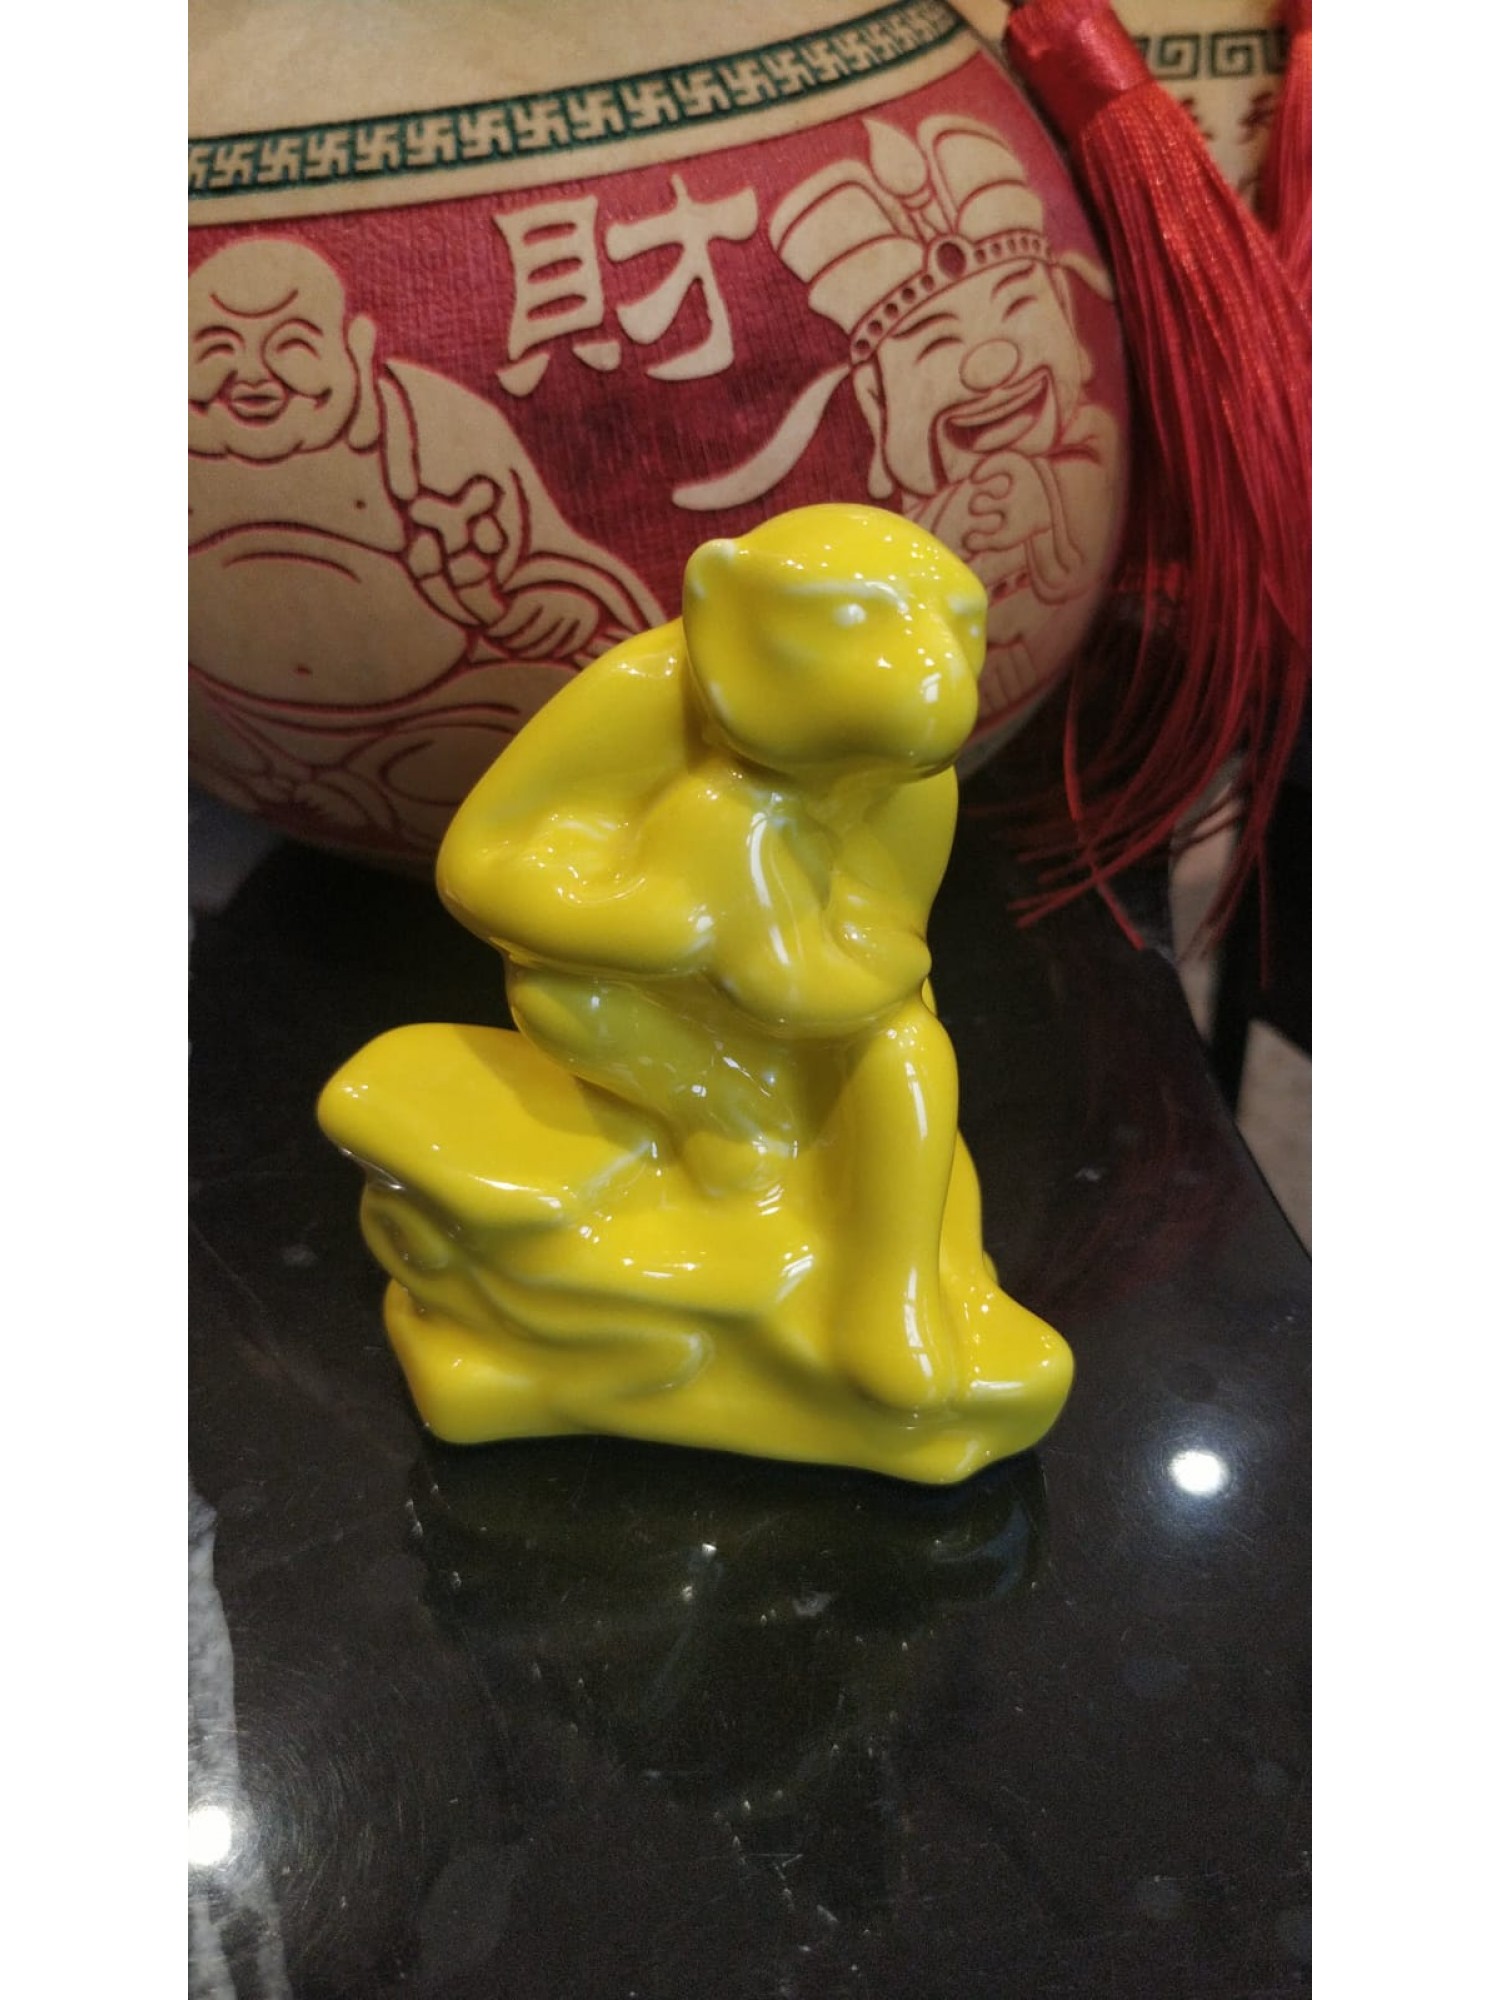 Статуэтка Обезьяна жёлтая из фарфора дарует своему обладателю крепкое здоровье, ловкость, изобретательность